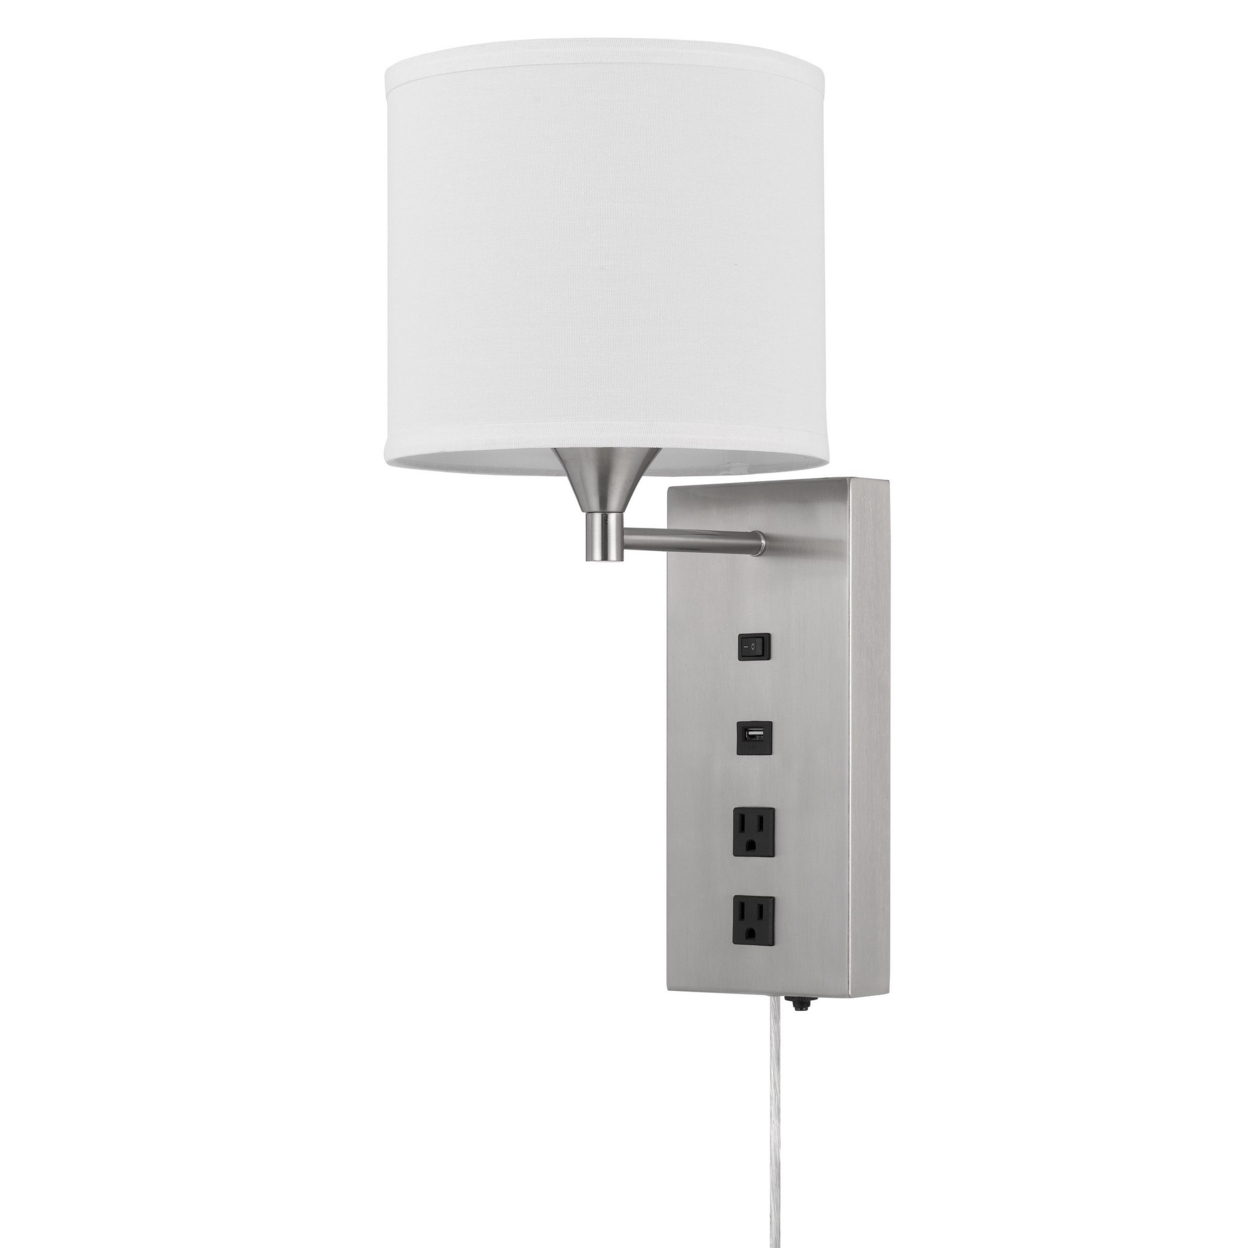 Rexi 19 Inch Modern Metal Wall Lamp, USB, 2 Power Outlets, White, Silver- Saltoro Sherpi